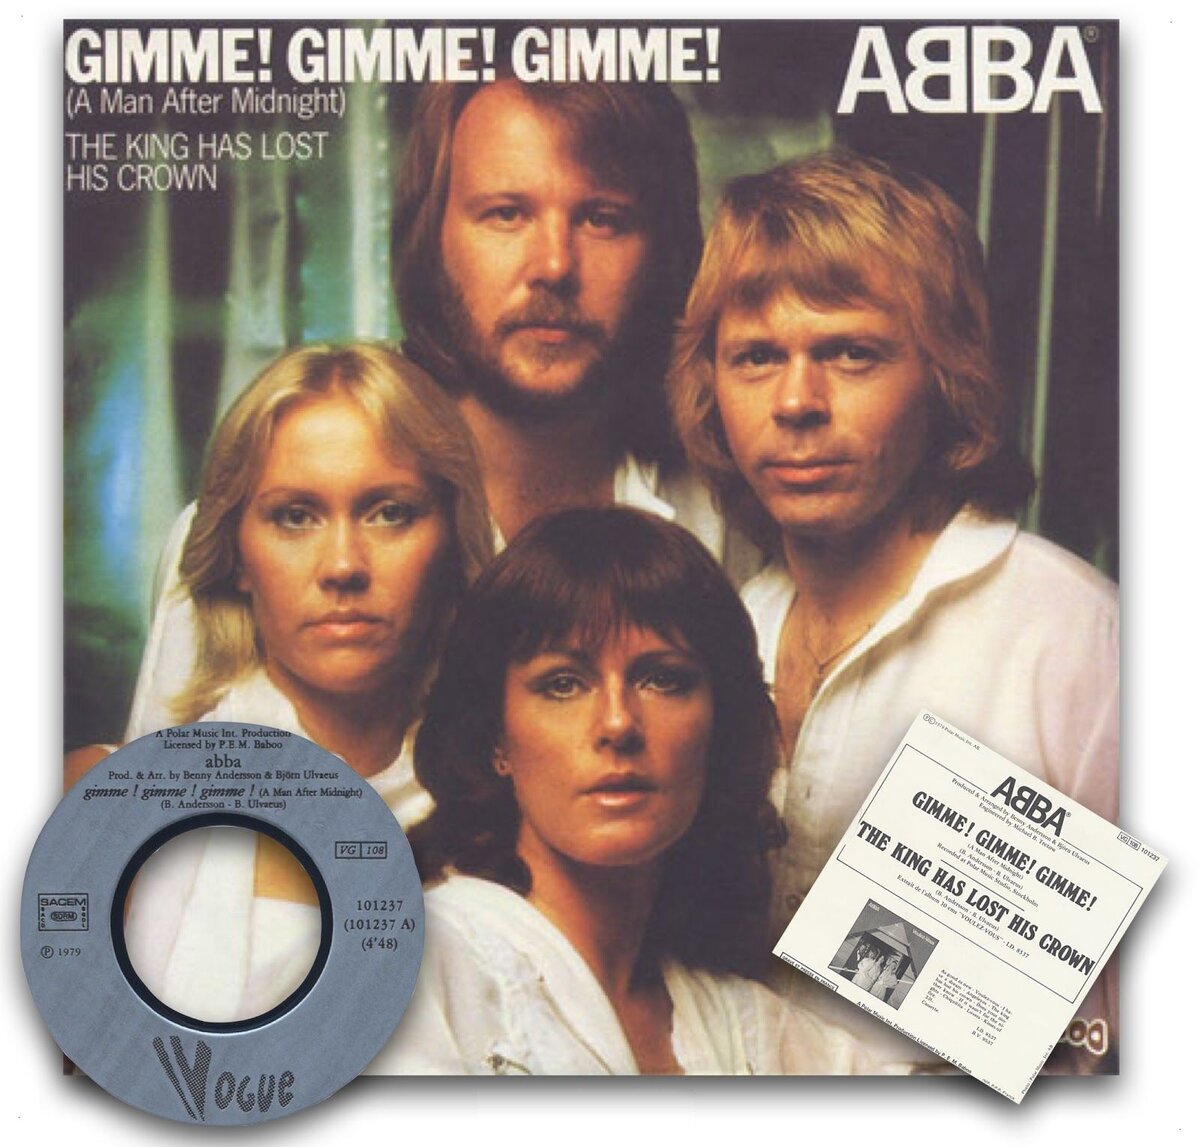 ABBA Gimme обложка. ABBA A man after Midnight. ABBA Gimme Gimme Gimme. ABBA - Gimme! Gimme! Gimme! (A man after Midnight). Abba gimme gimme gimme a man